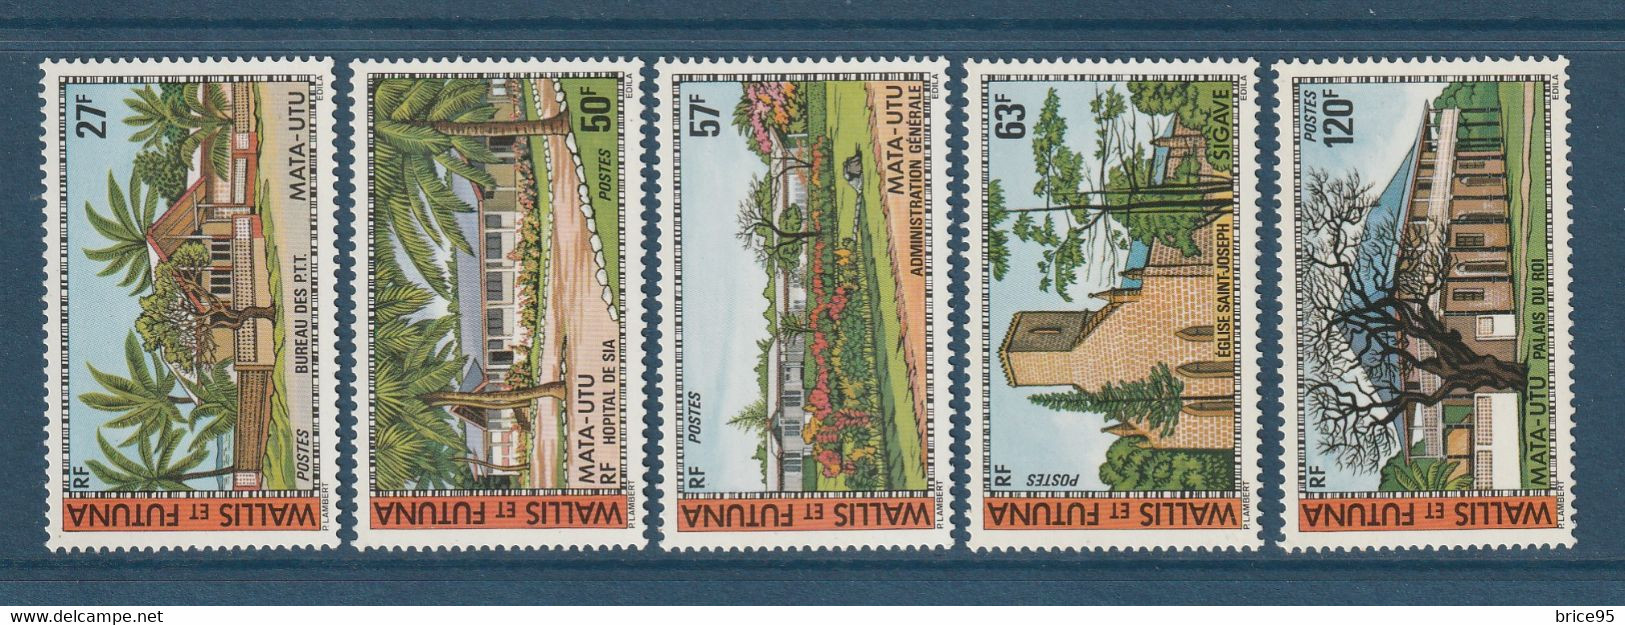 Wallis Et Futuna - YT N° 203 à 207 ** - Neuf Sans Charnière - 1977 - Unused Stamps